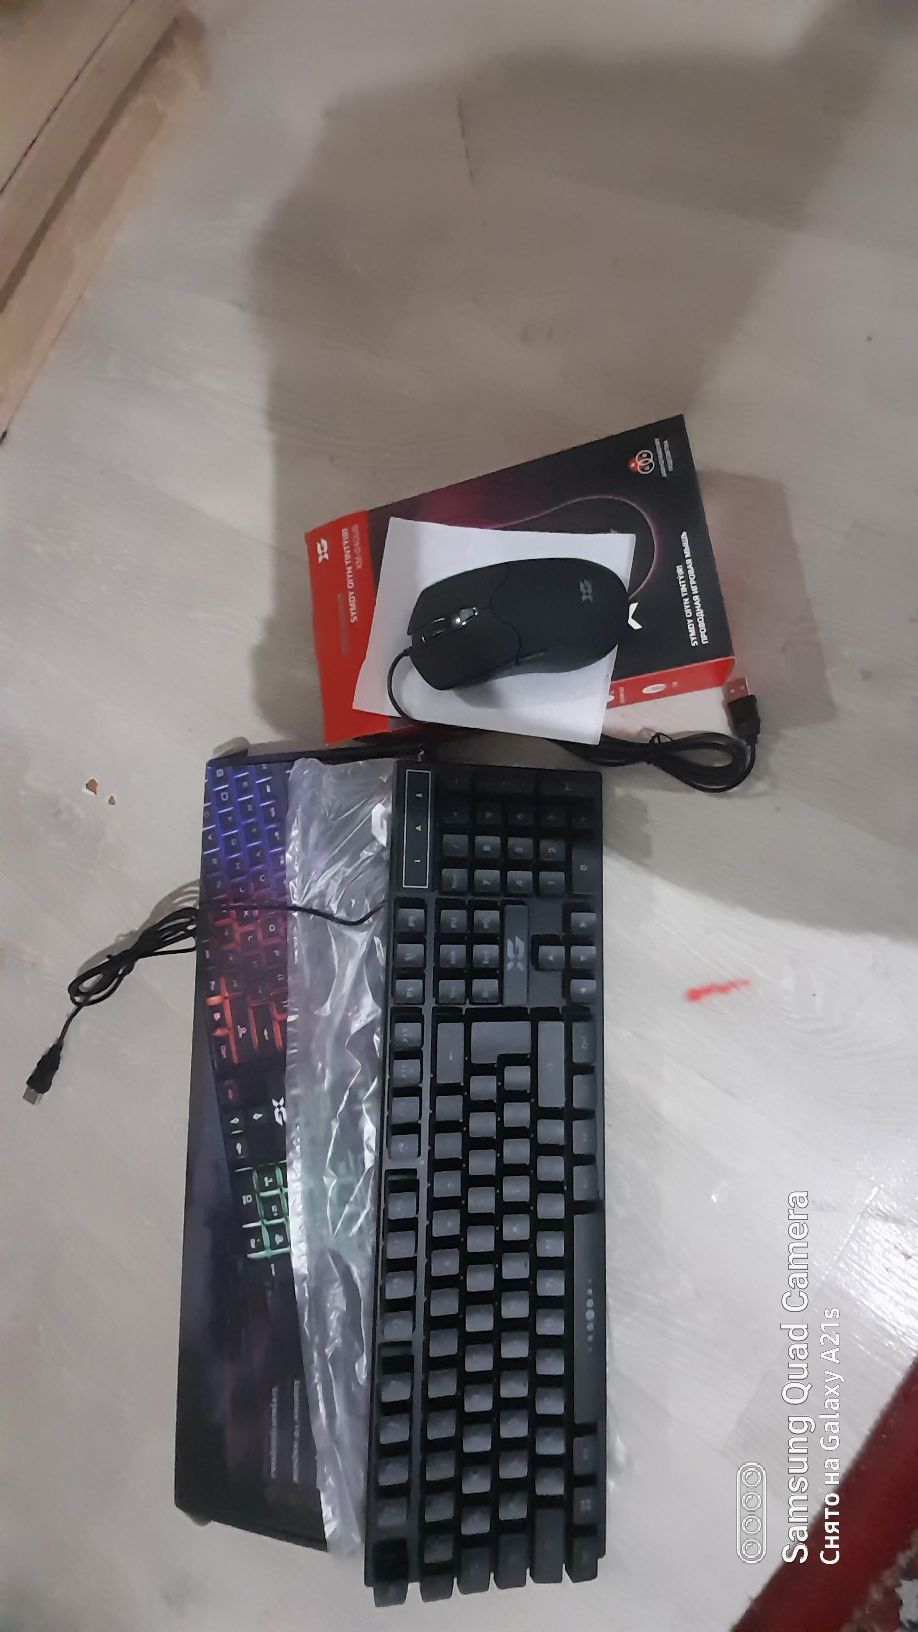 Клавиатура + мышка новые в упаковке!